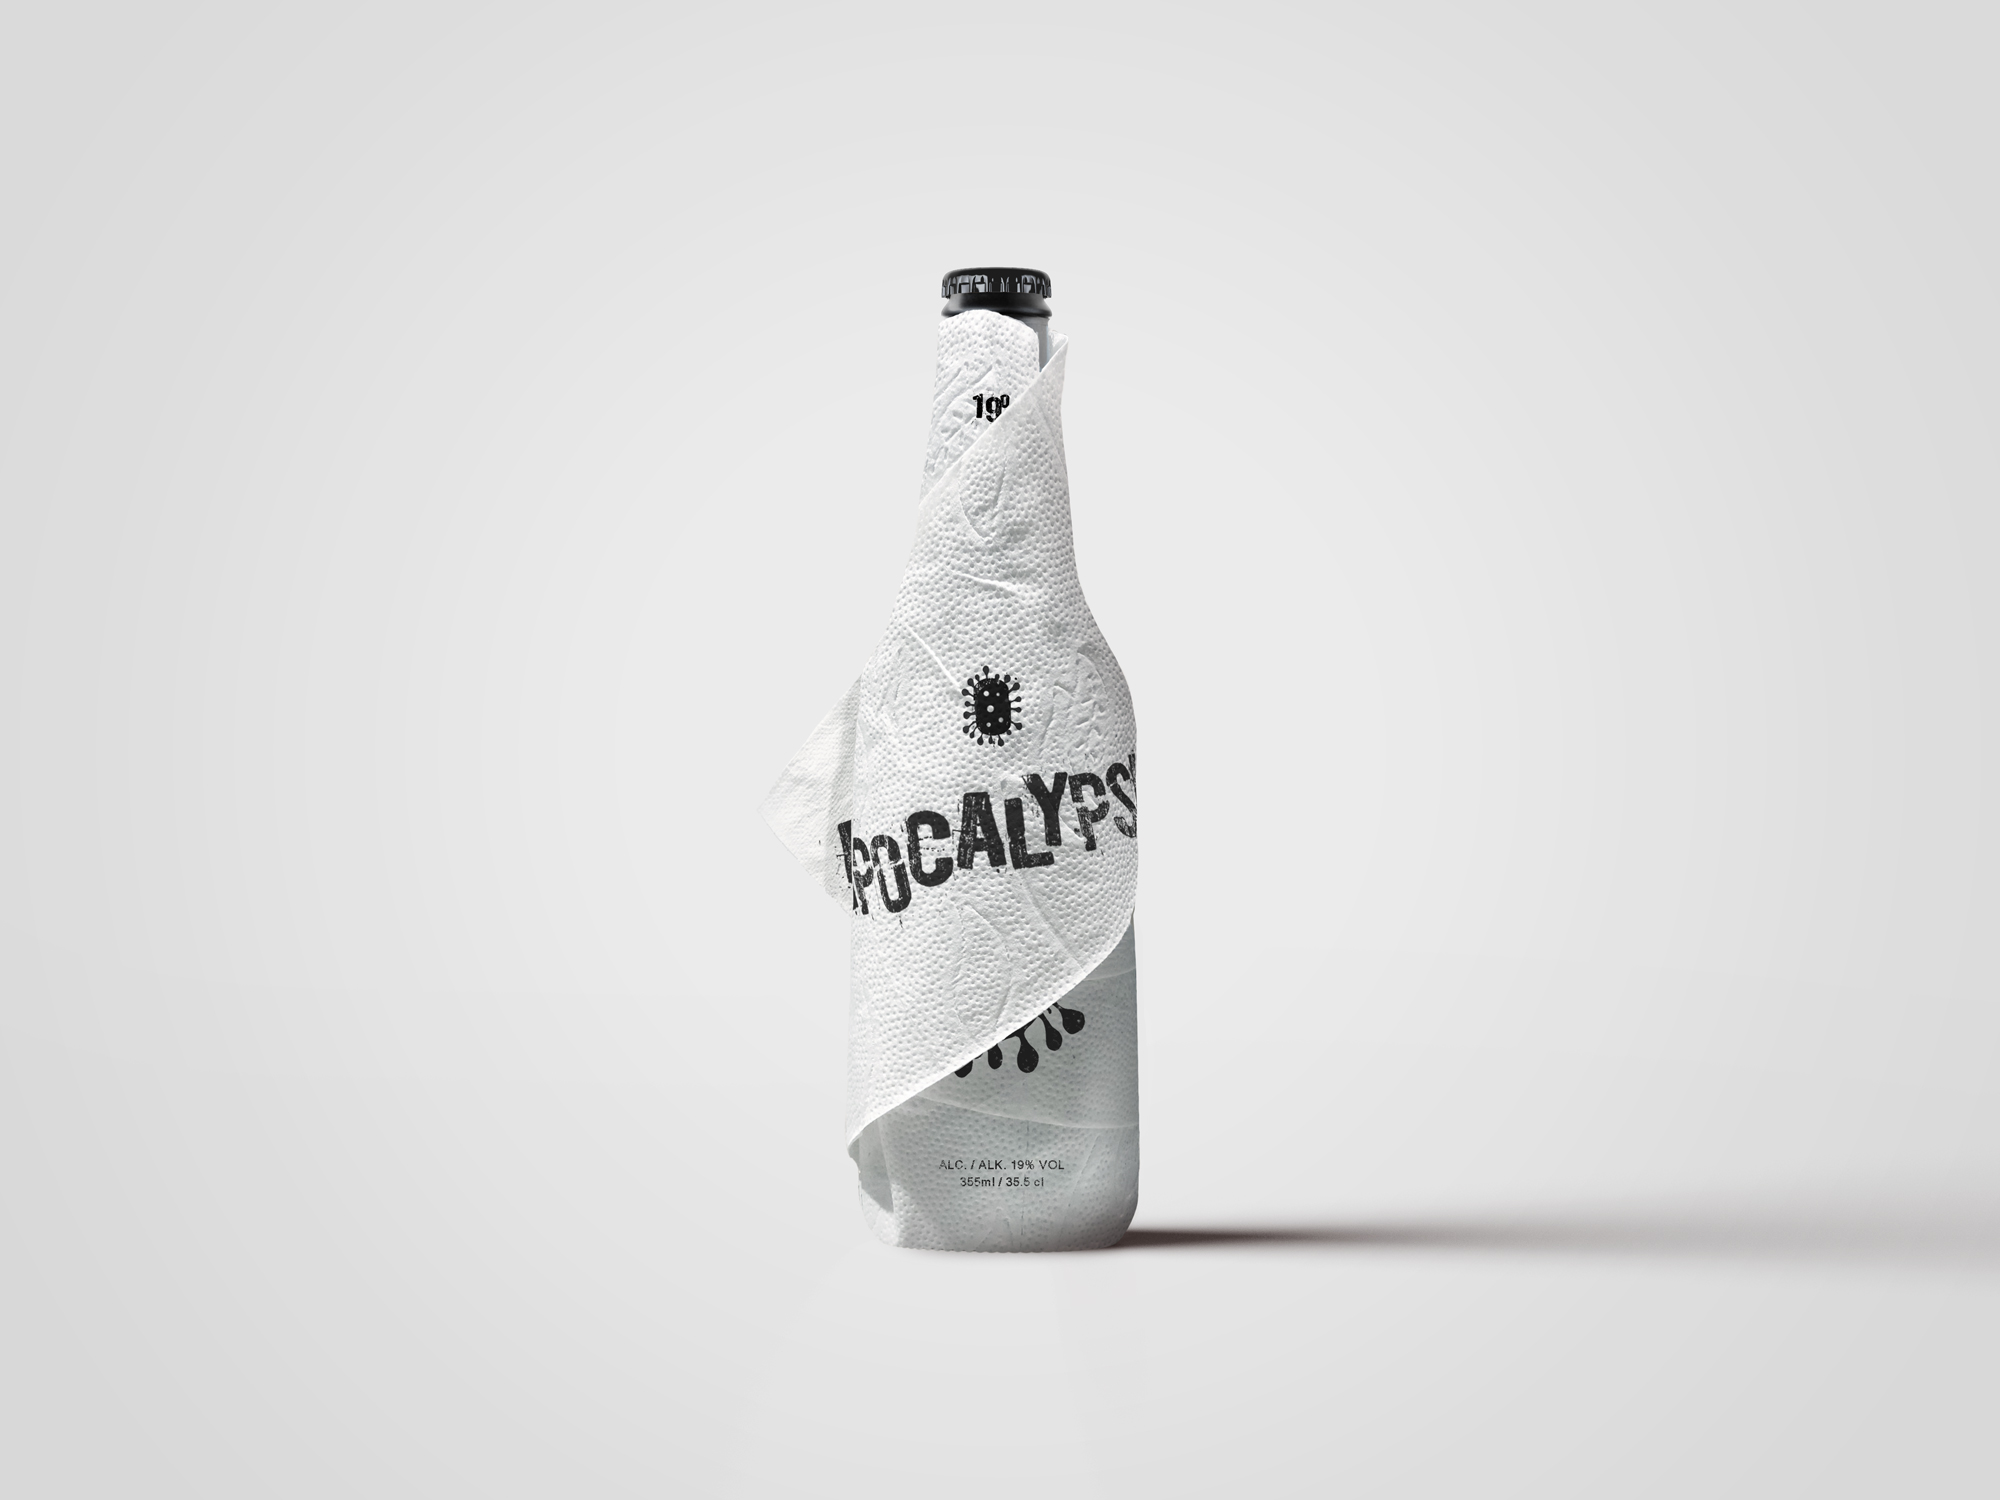 Apocalypse beer bottle label design by Johan Wibrink